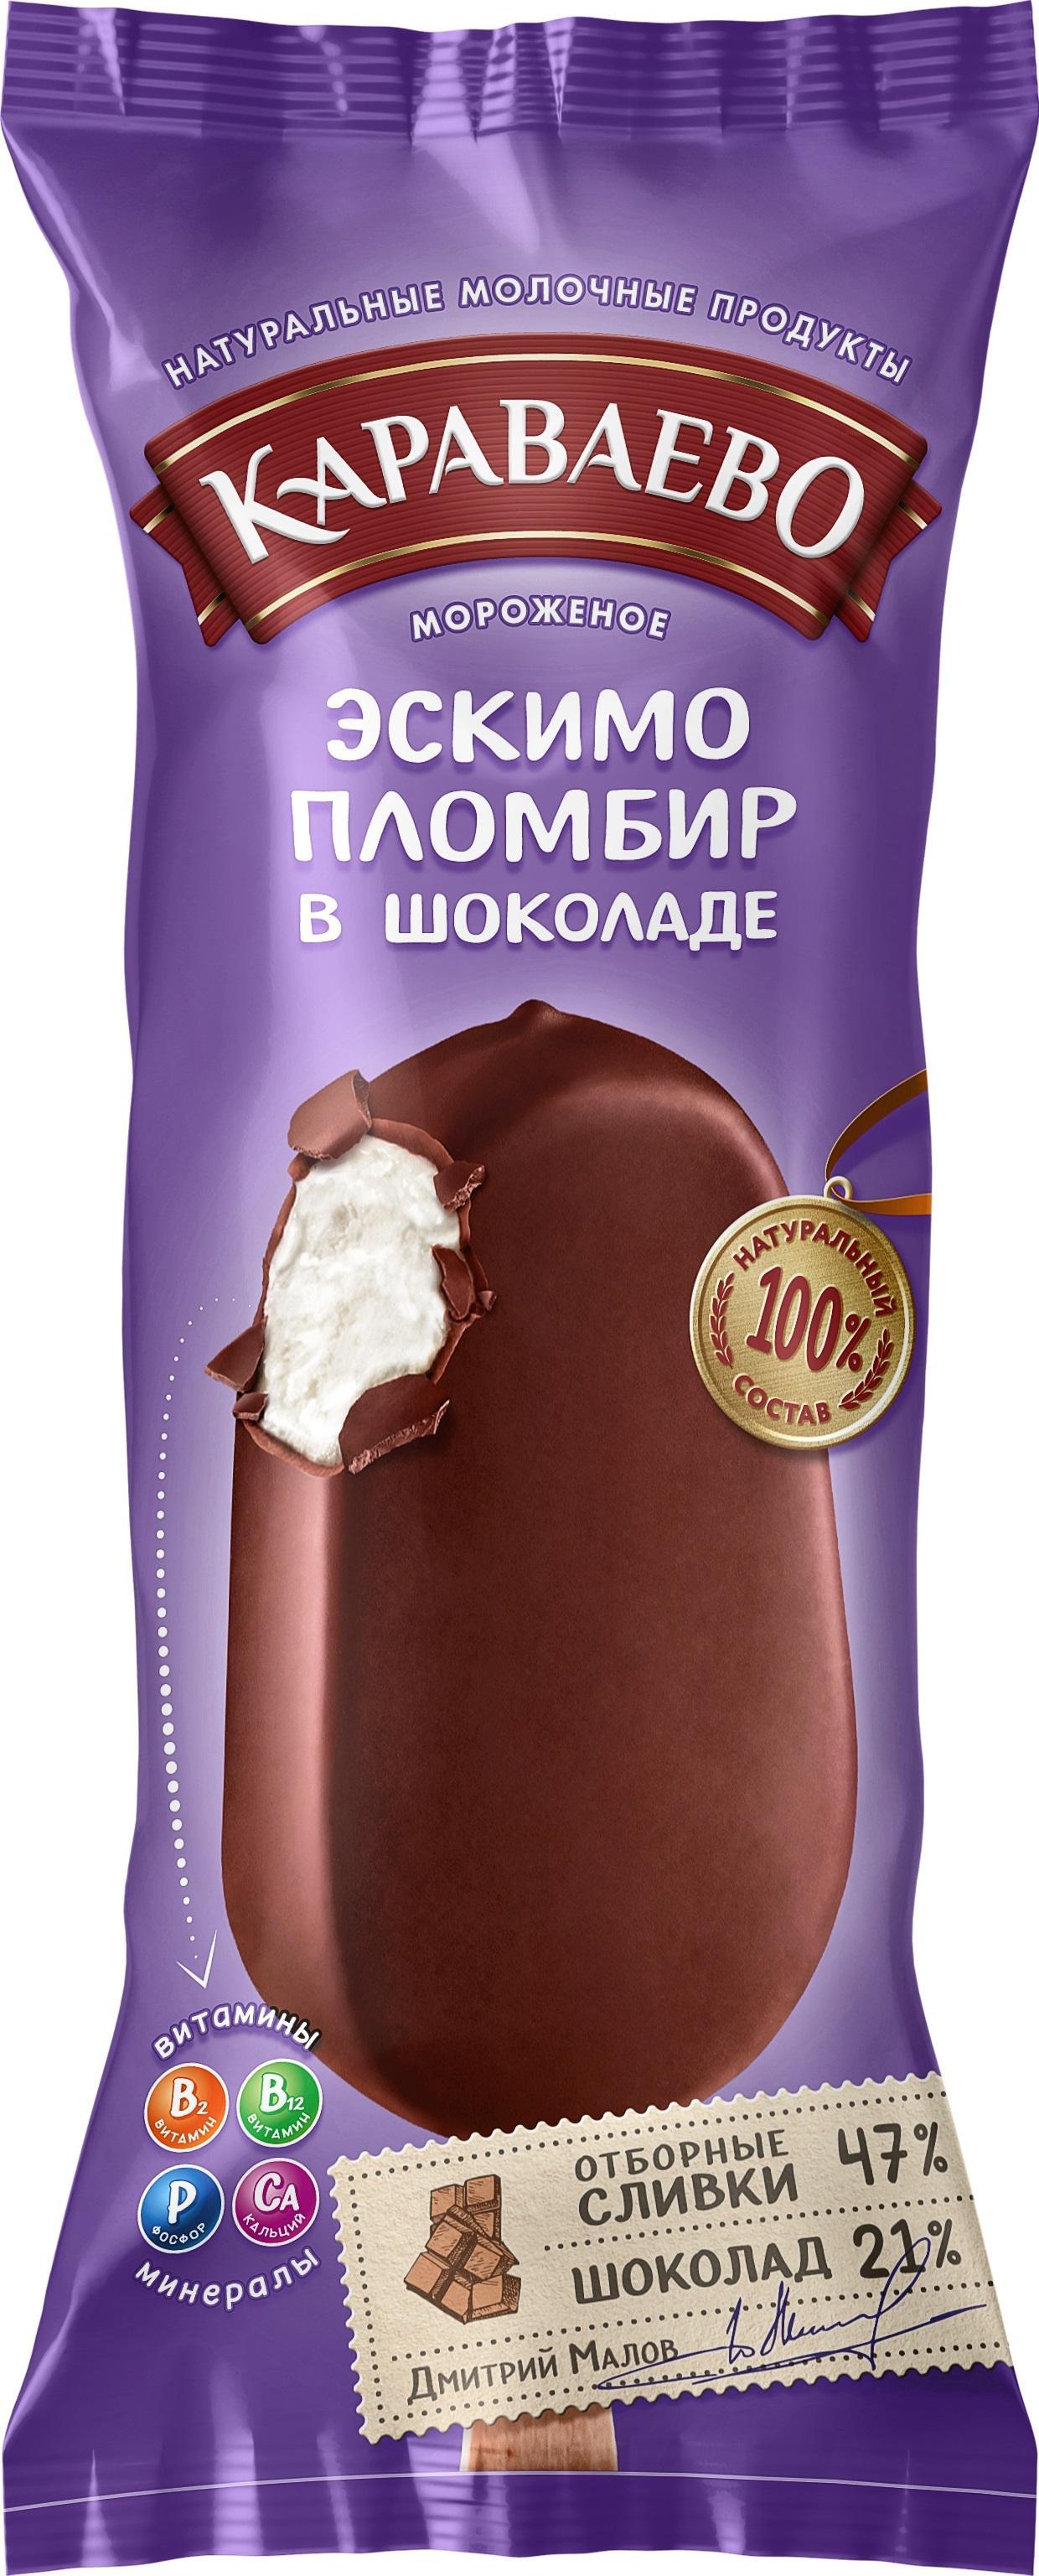 Мороженое ПЛОМБИР эскимо в шоколаде 70 гр., флоу-пак